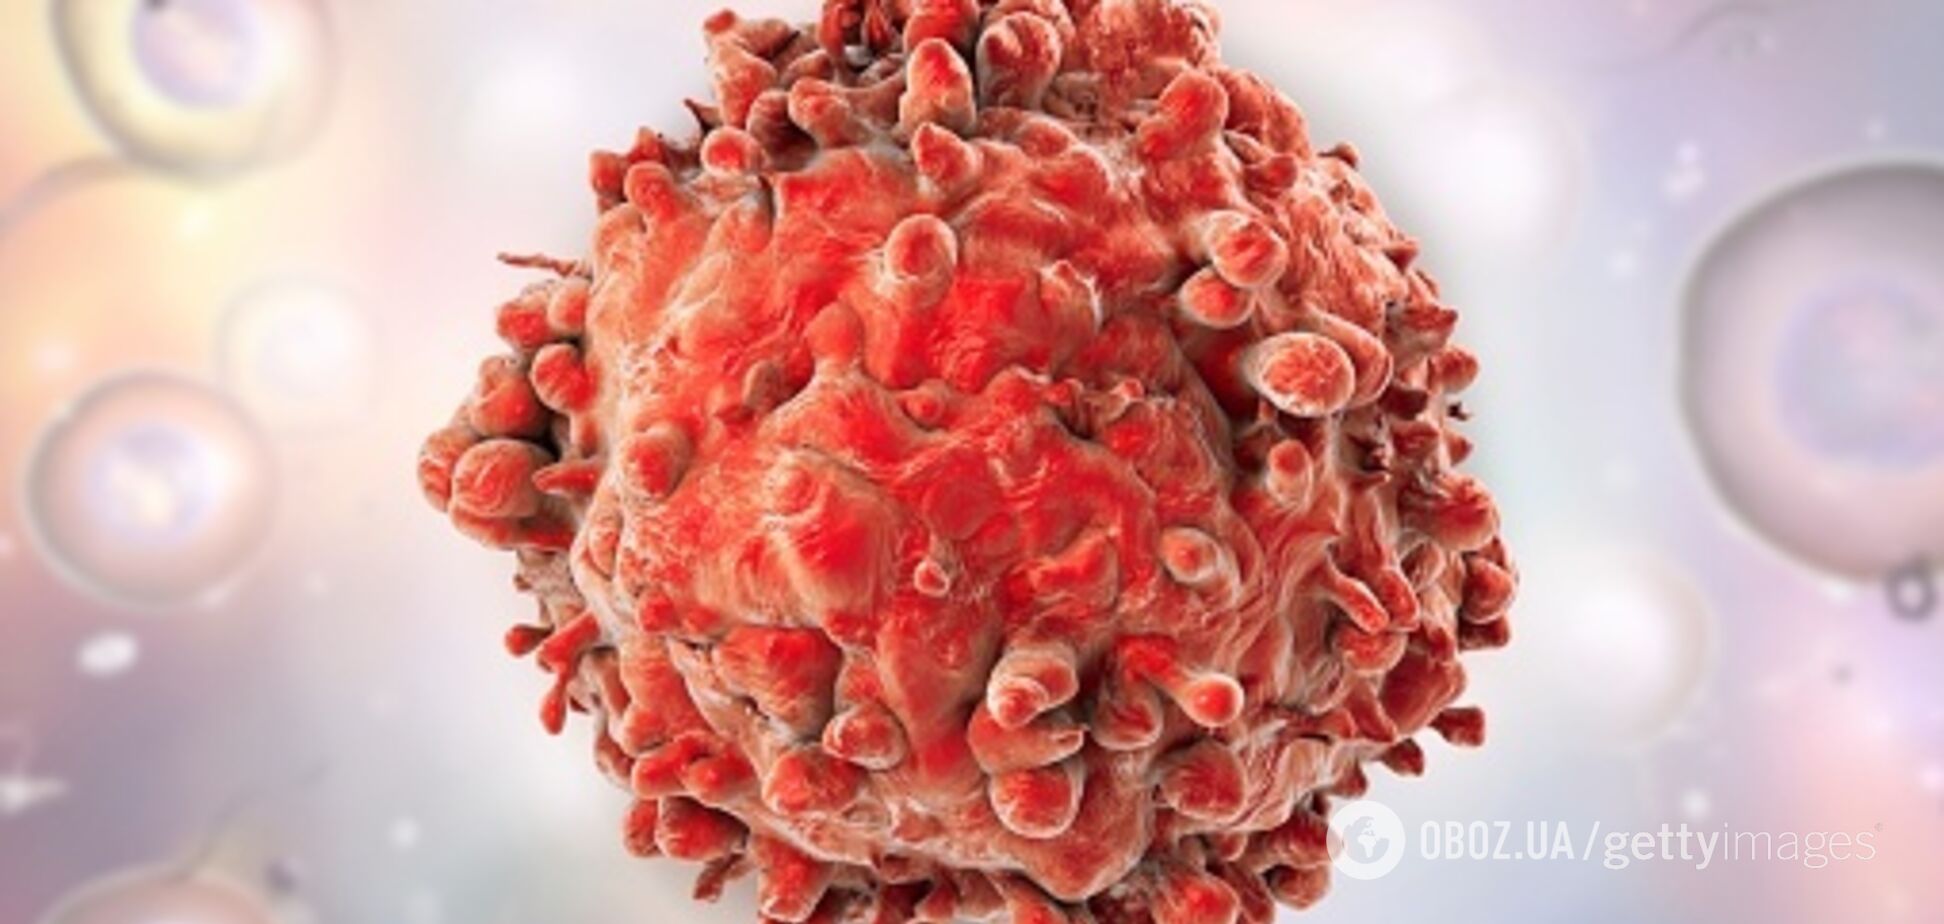 Як врятуватися від раку: медики дали поради людям за 40